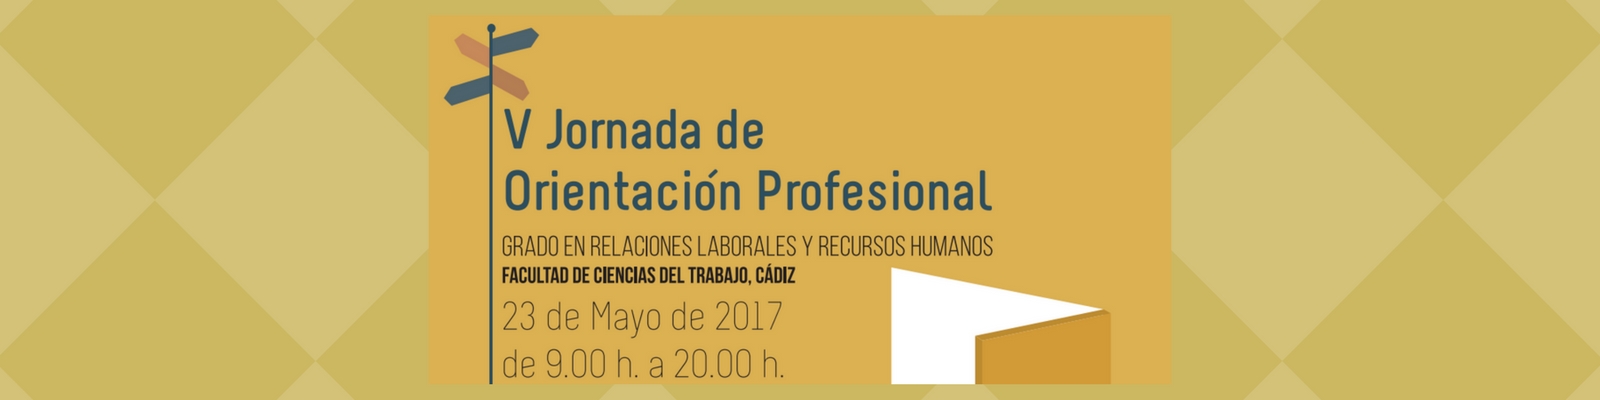 V Jornada de Orientación Profesional en Cádiz